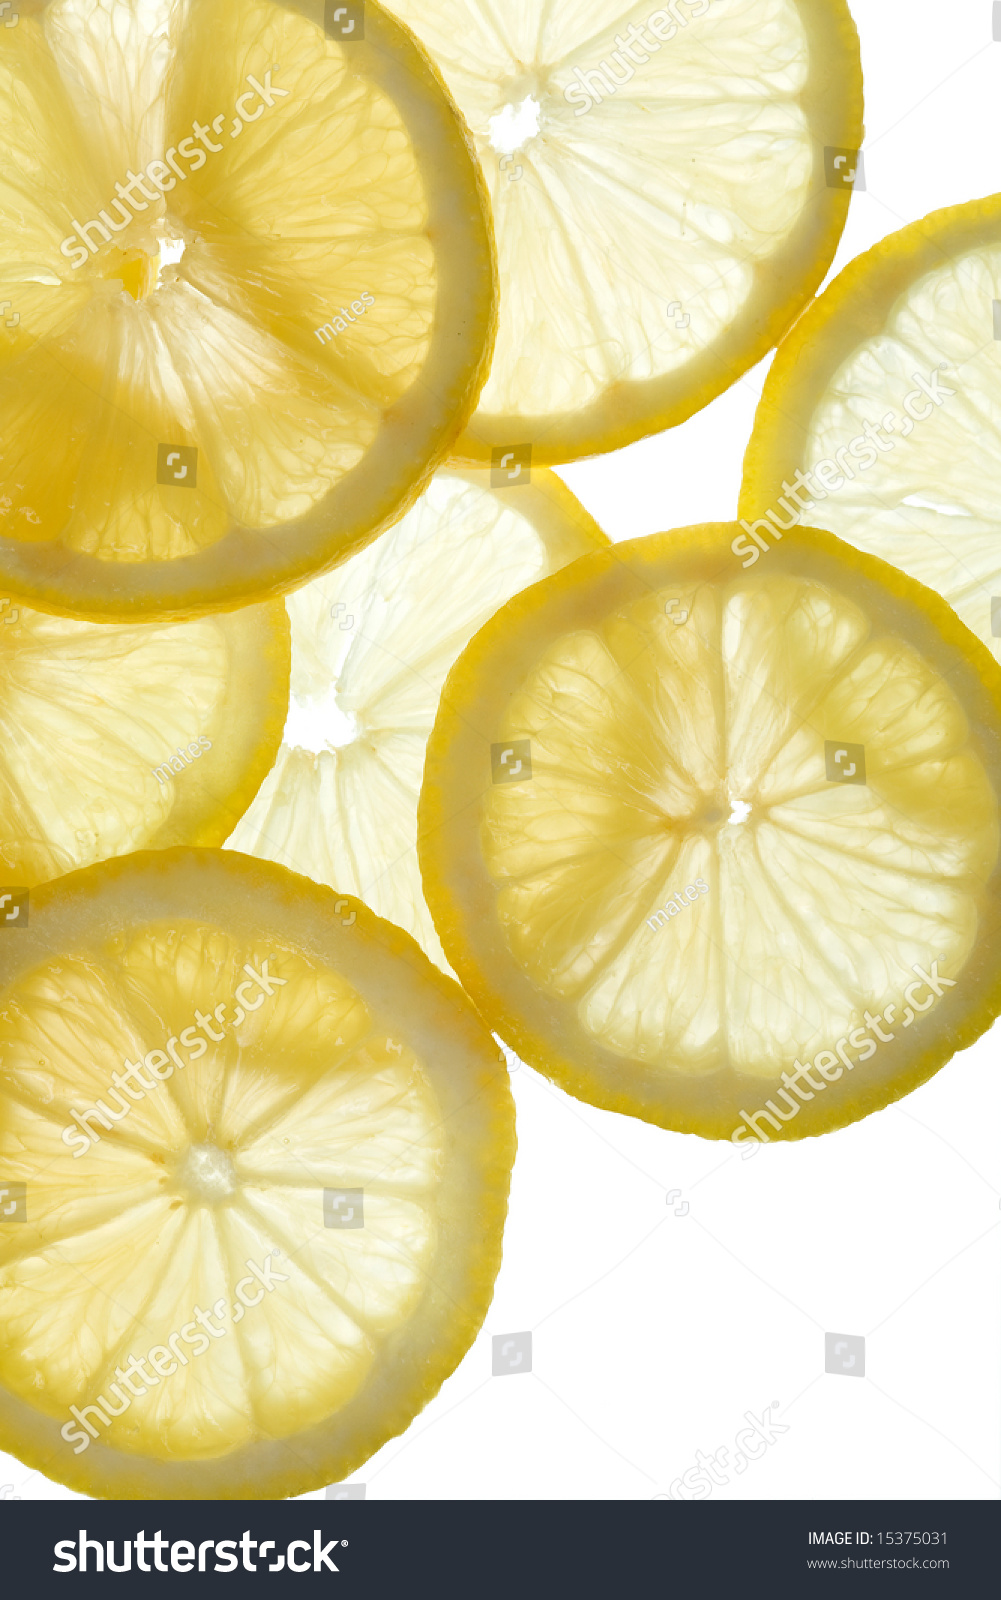 Lemon Background Stock Photo 15375031 : Shutterstock